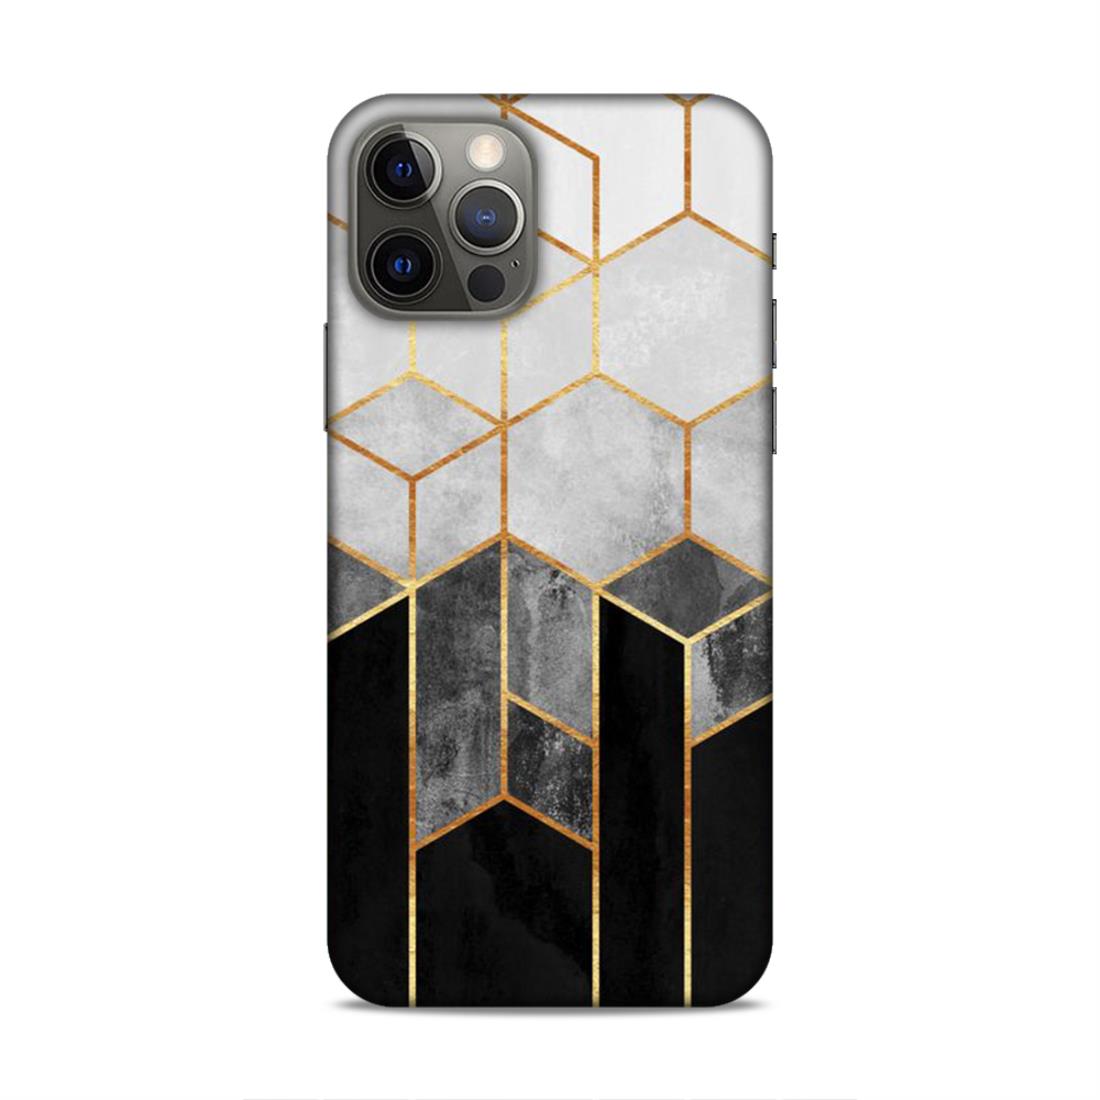 Hexagonal White Black Pattern Hard Back Case For Apple iPhone 12 / 12 Pro